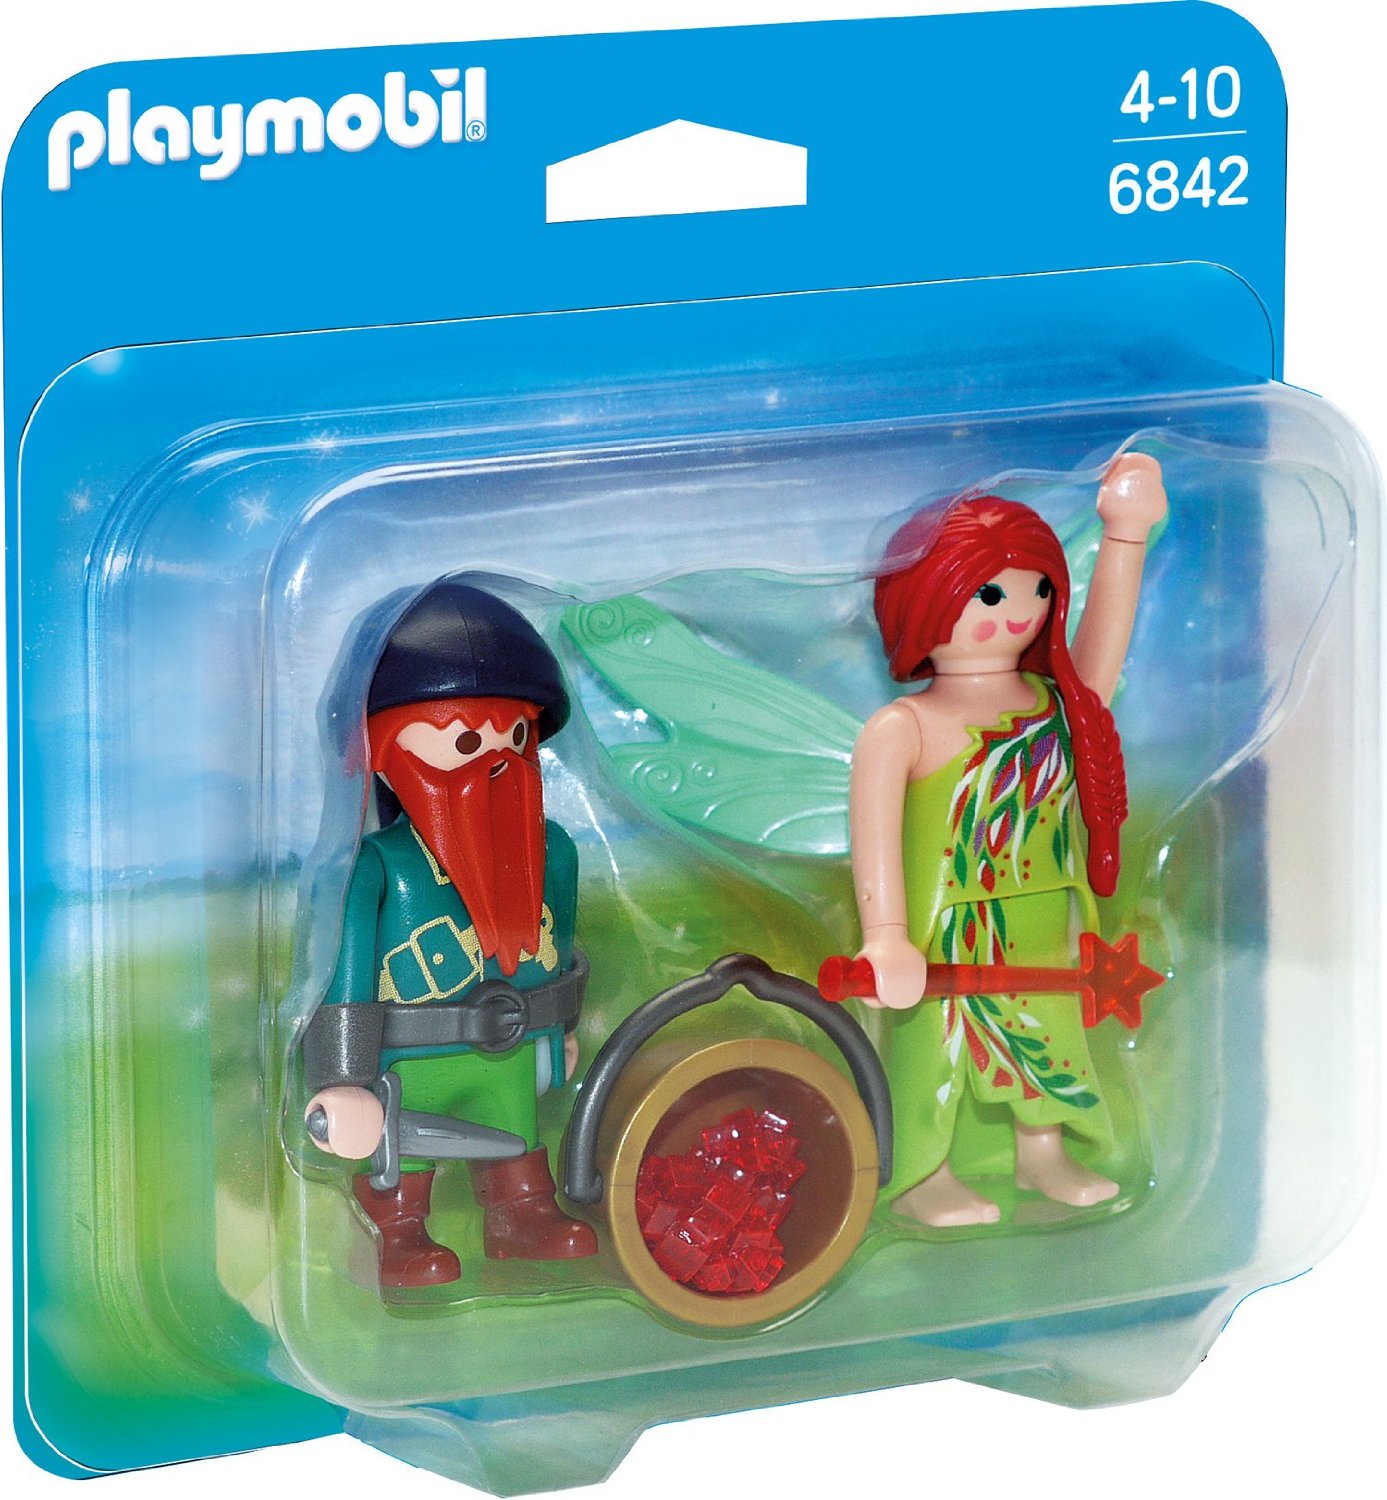 Playmobil Duo Pack Elfe und Zwerg (6842)